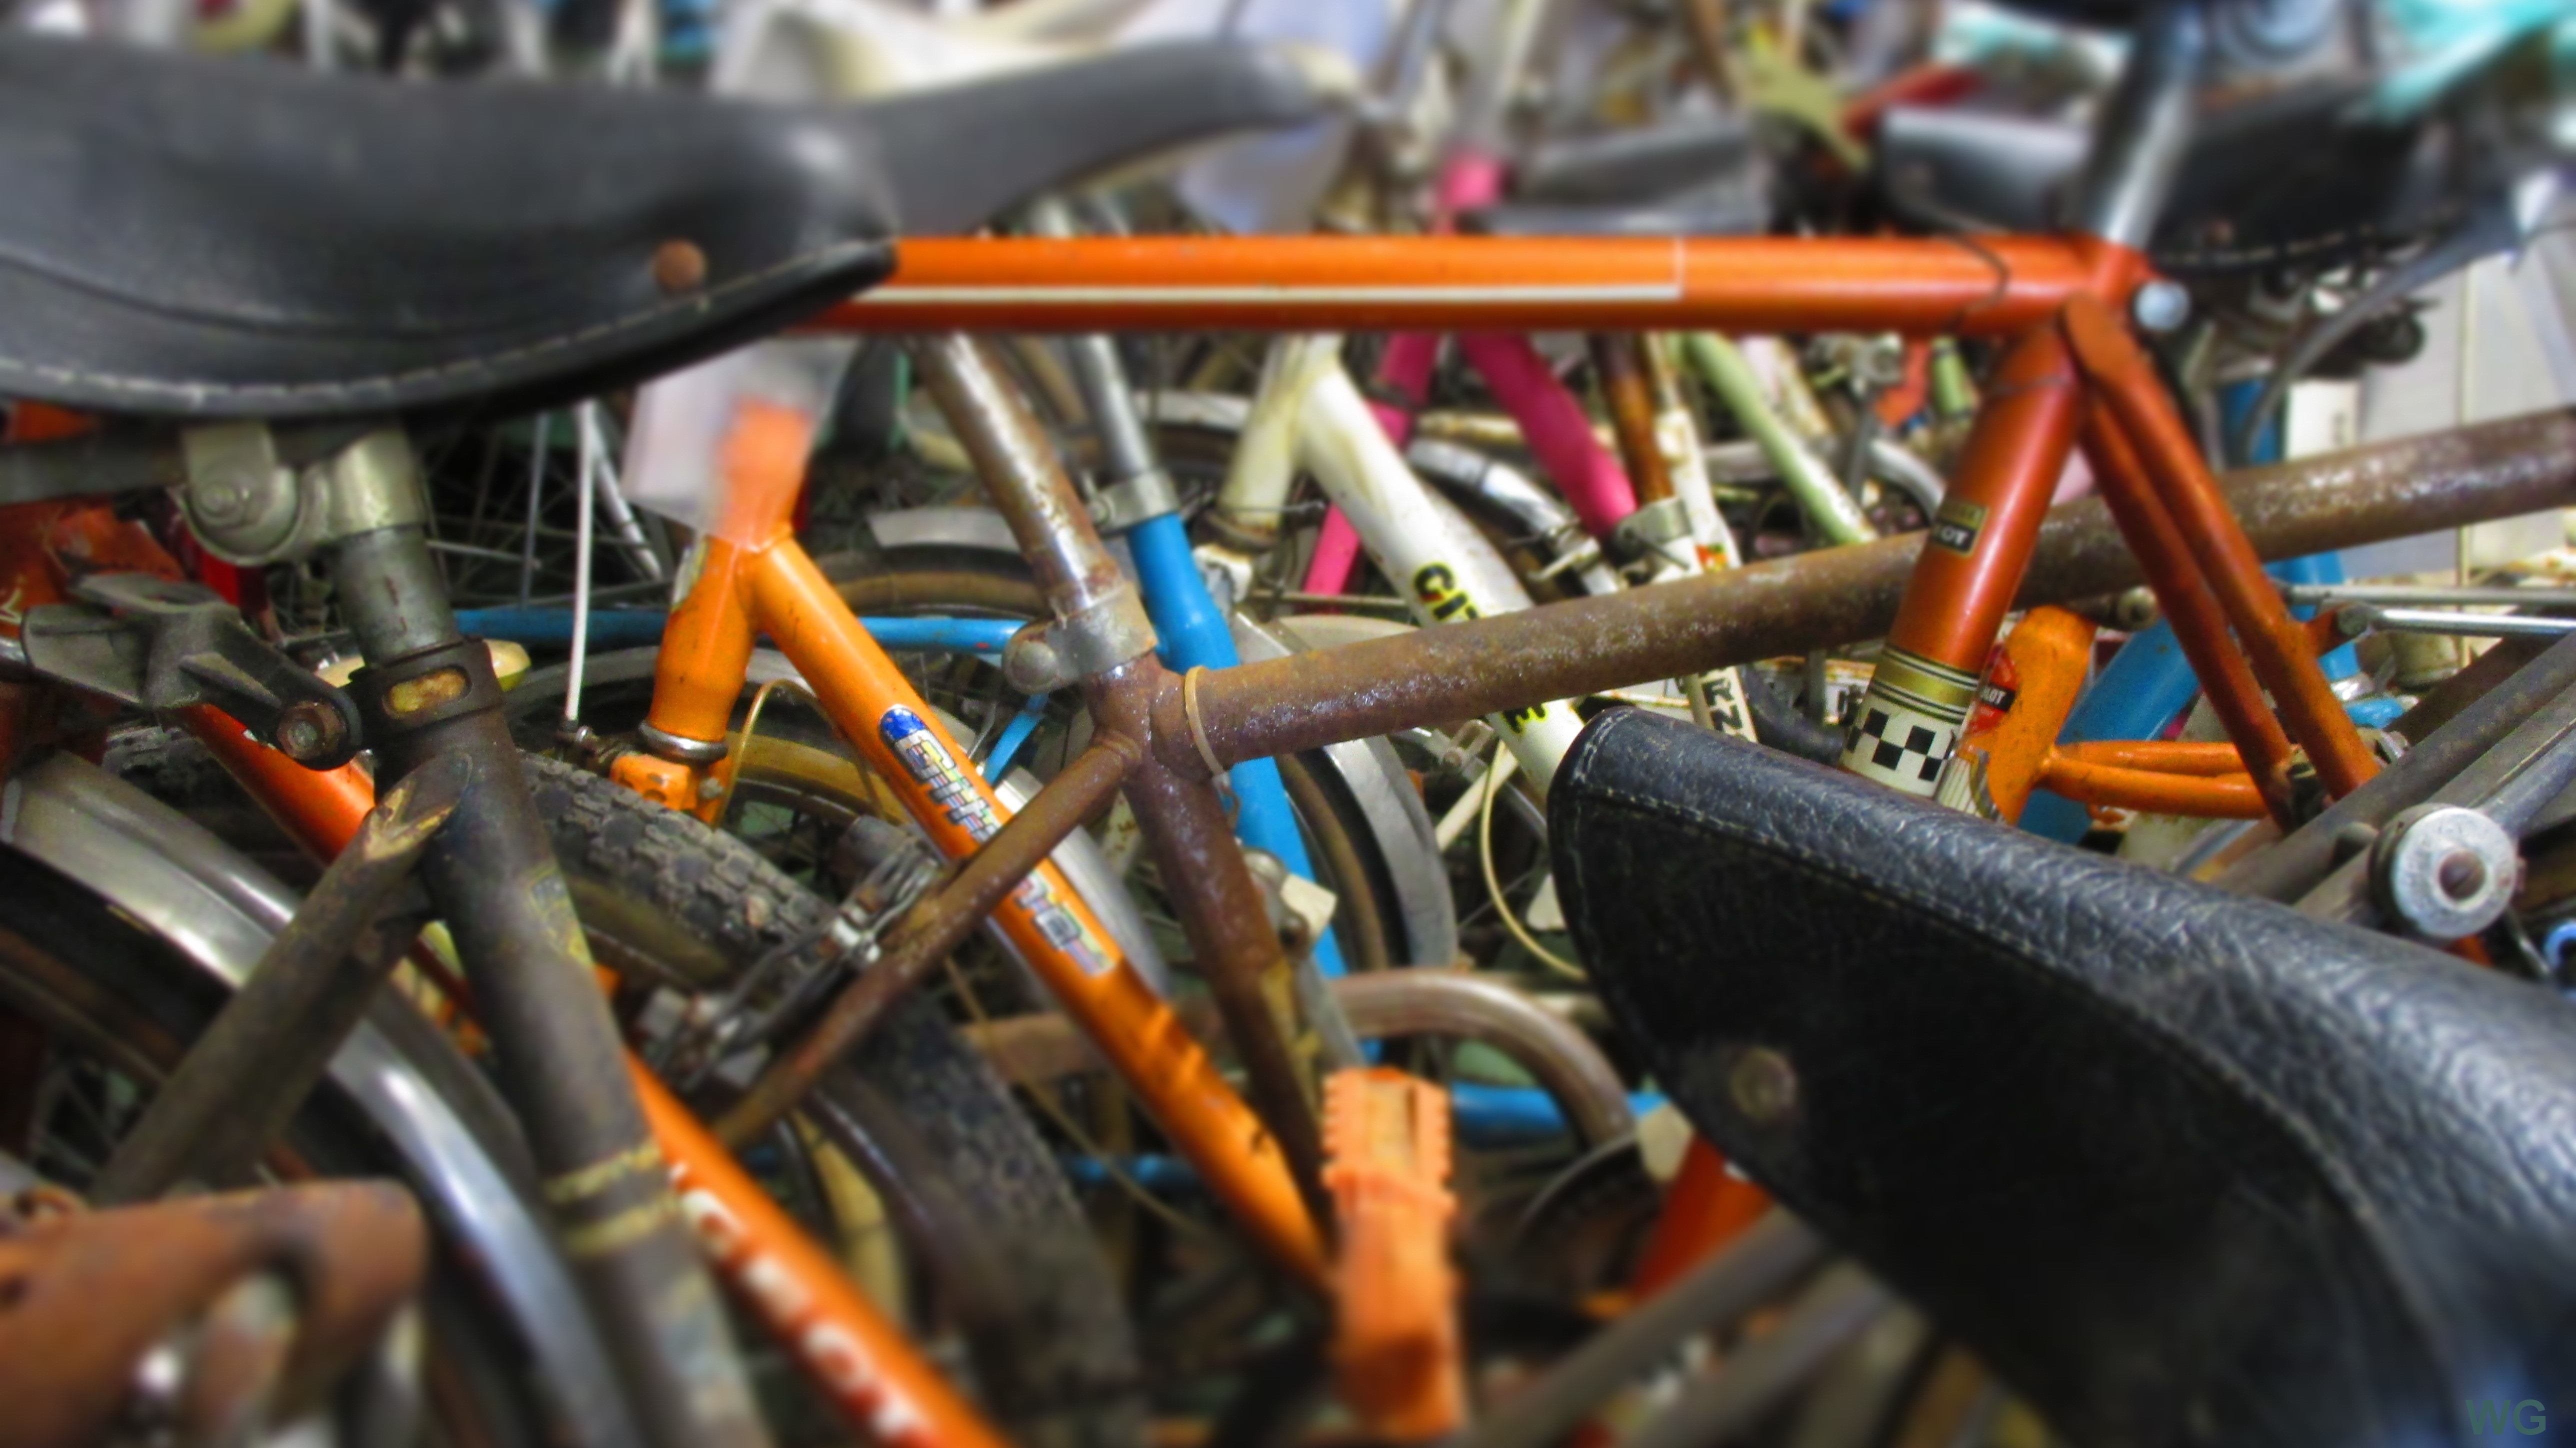 Dans le cadre de son activité d'économie circulaire (recyclage et réemploi de vélos et de pièces), le Collectif Cycliste 37 accepte les dons de vélos pour restauration et revente. ©CC37-photo Willy Granger